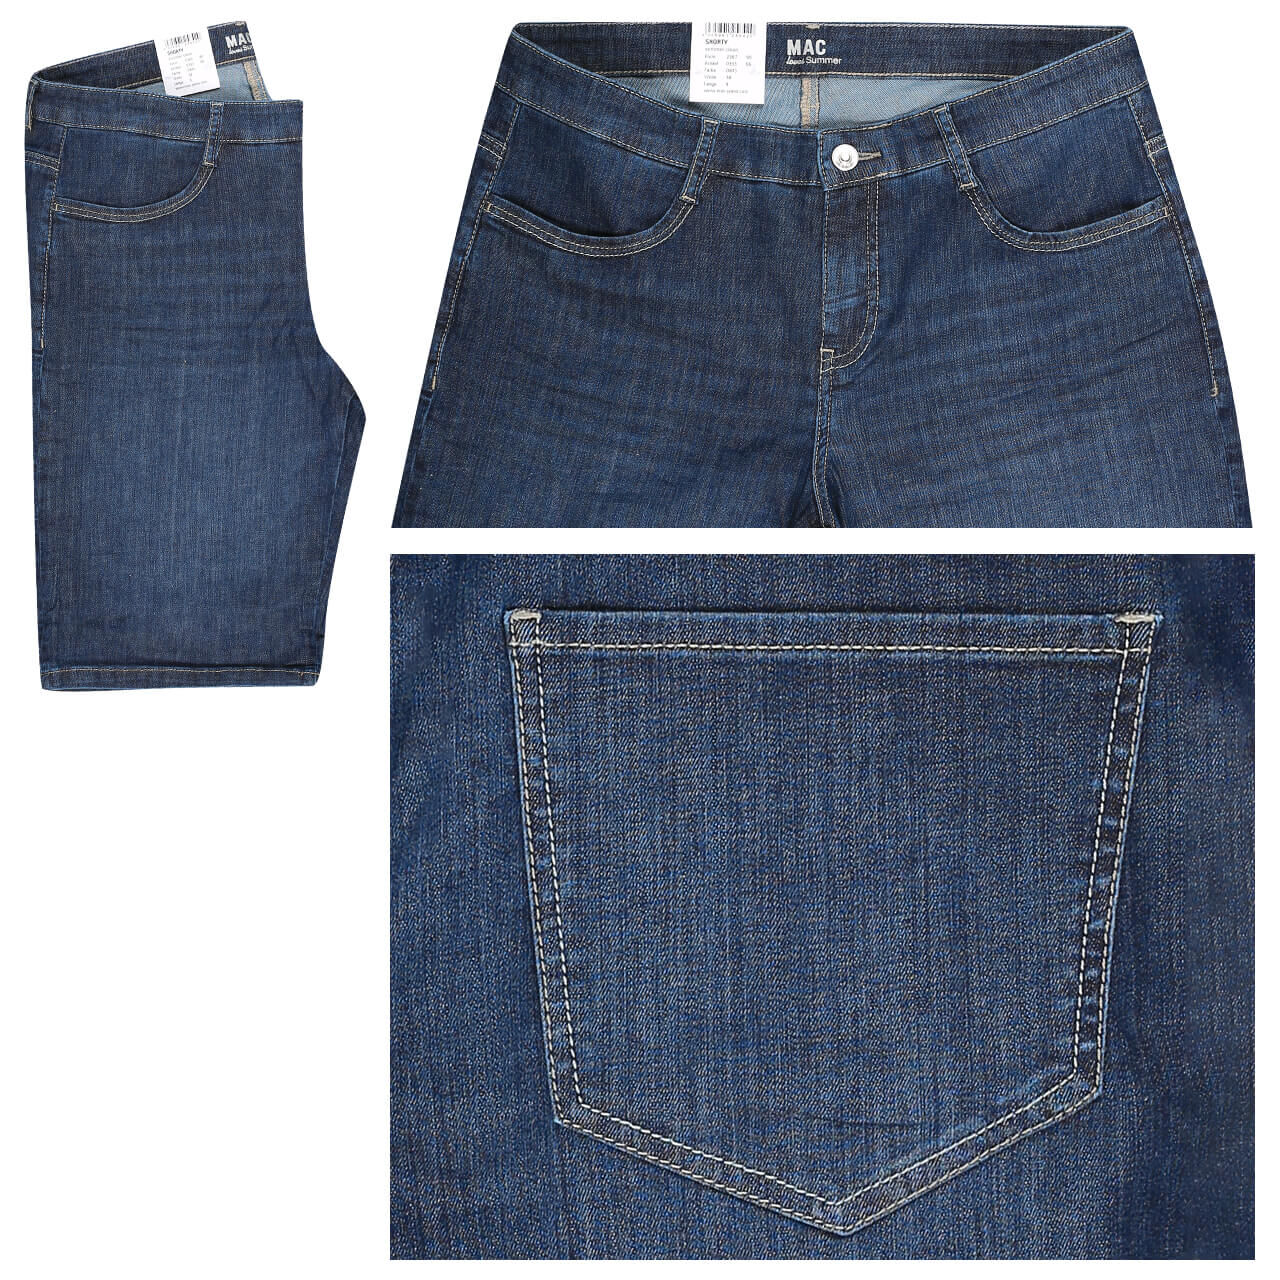 MAC Jeans Shorty für Damen in Dunkelblau angewaschen, FarbNr.: D845